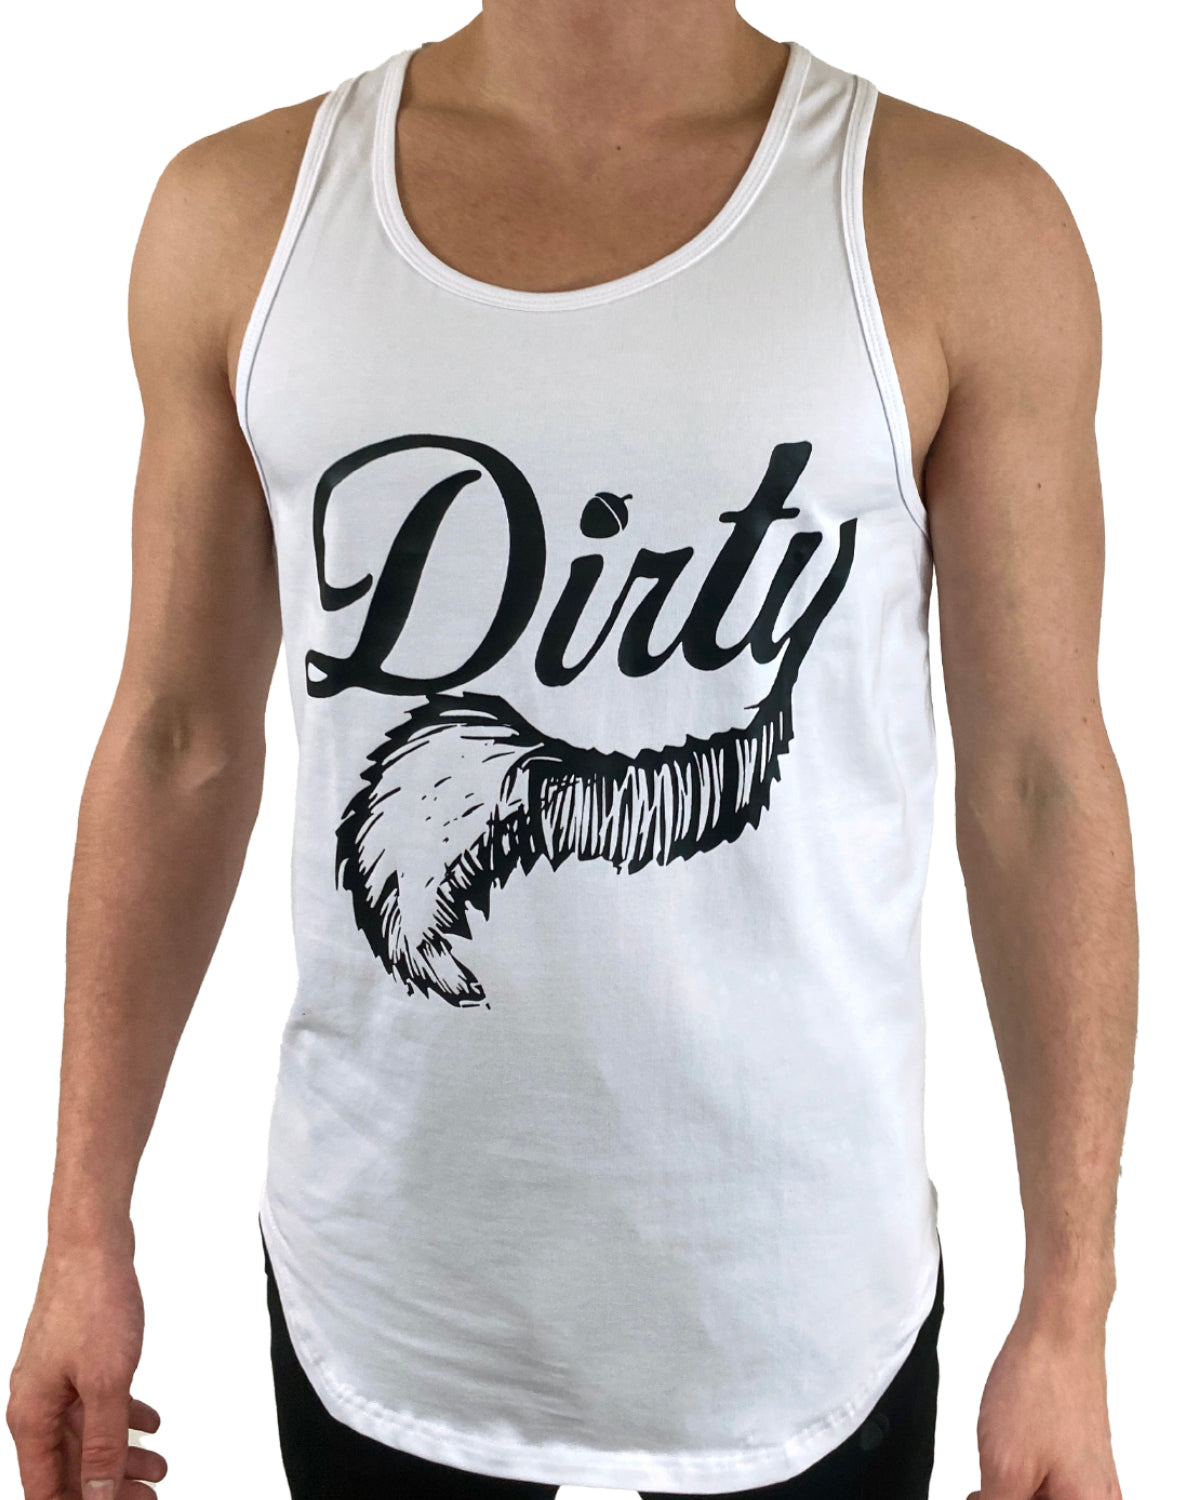 Dirty Tank Top - Big Logo